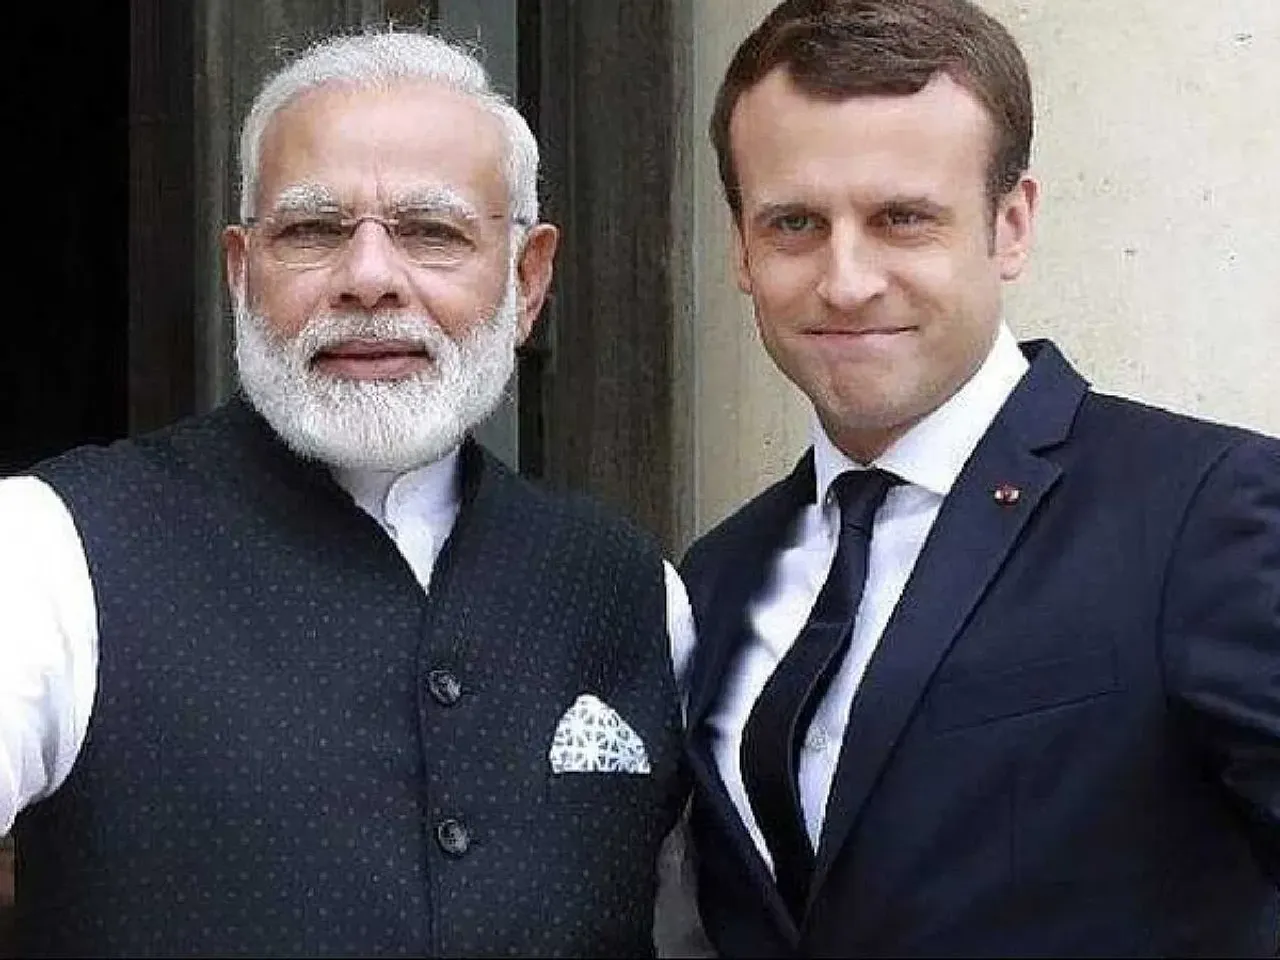 Prime Minister Narendra Modi with French Prez Macron